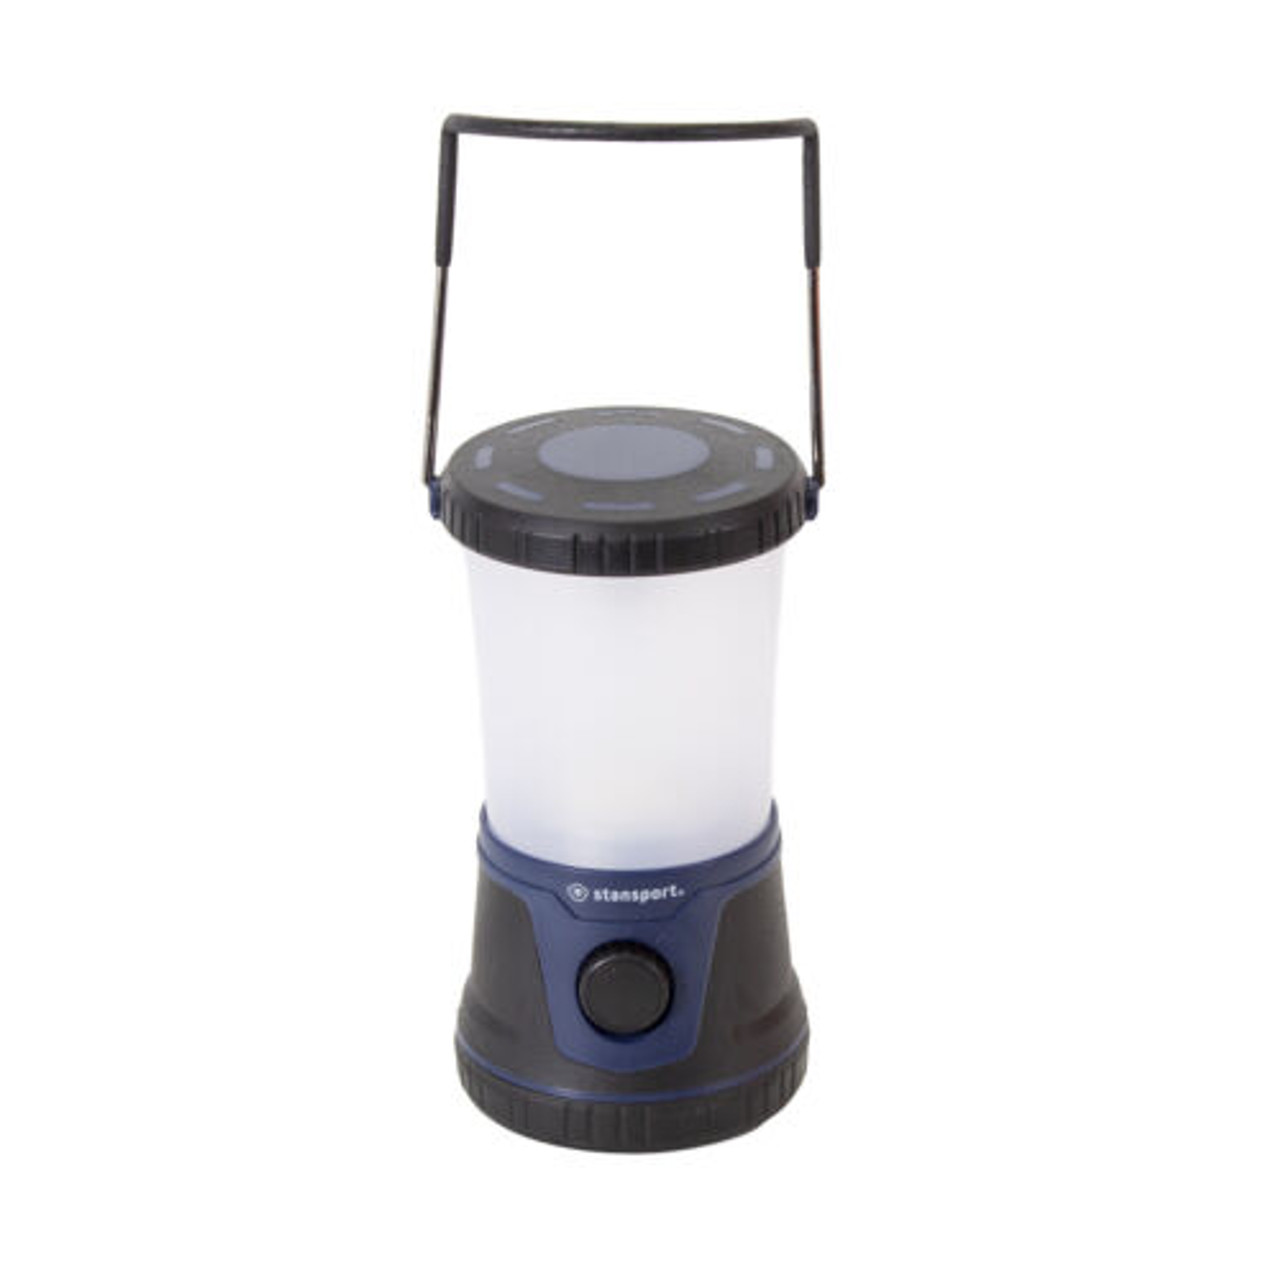 Stansport 1500 Lumen Rechargeable Lantern W/ Smd Bulbs Built In Batt